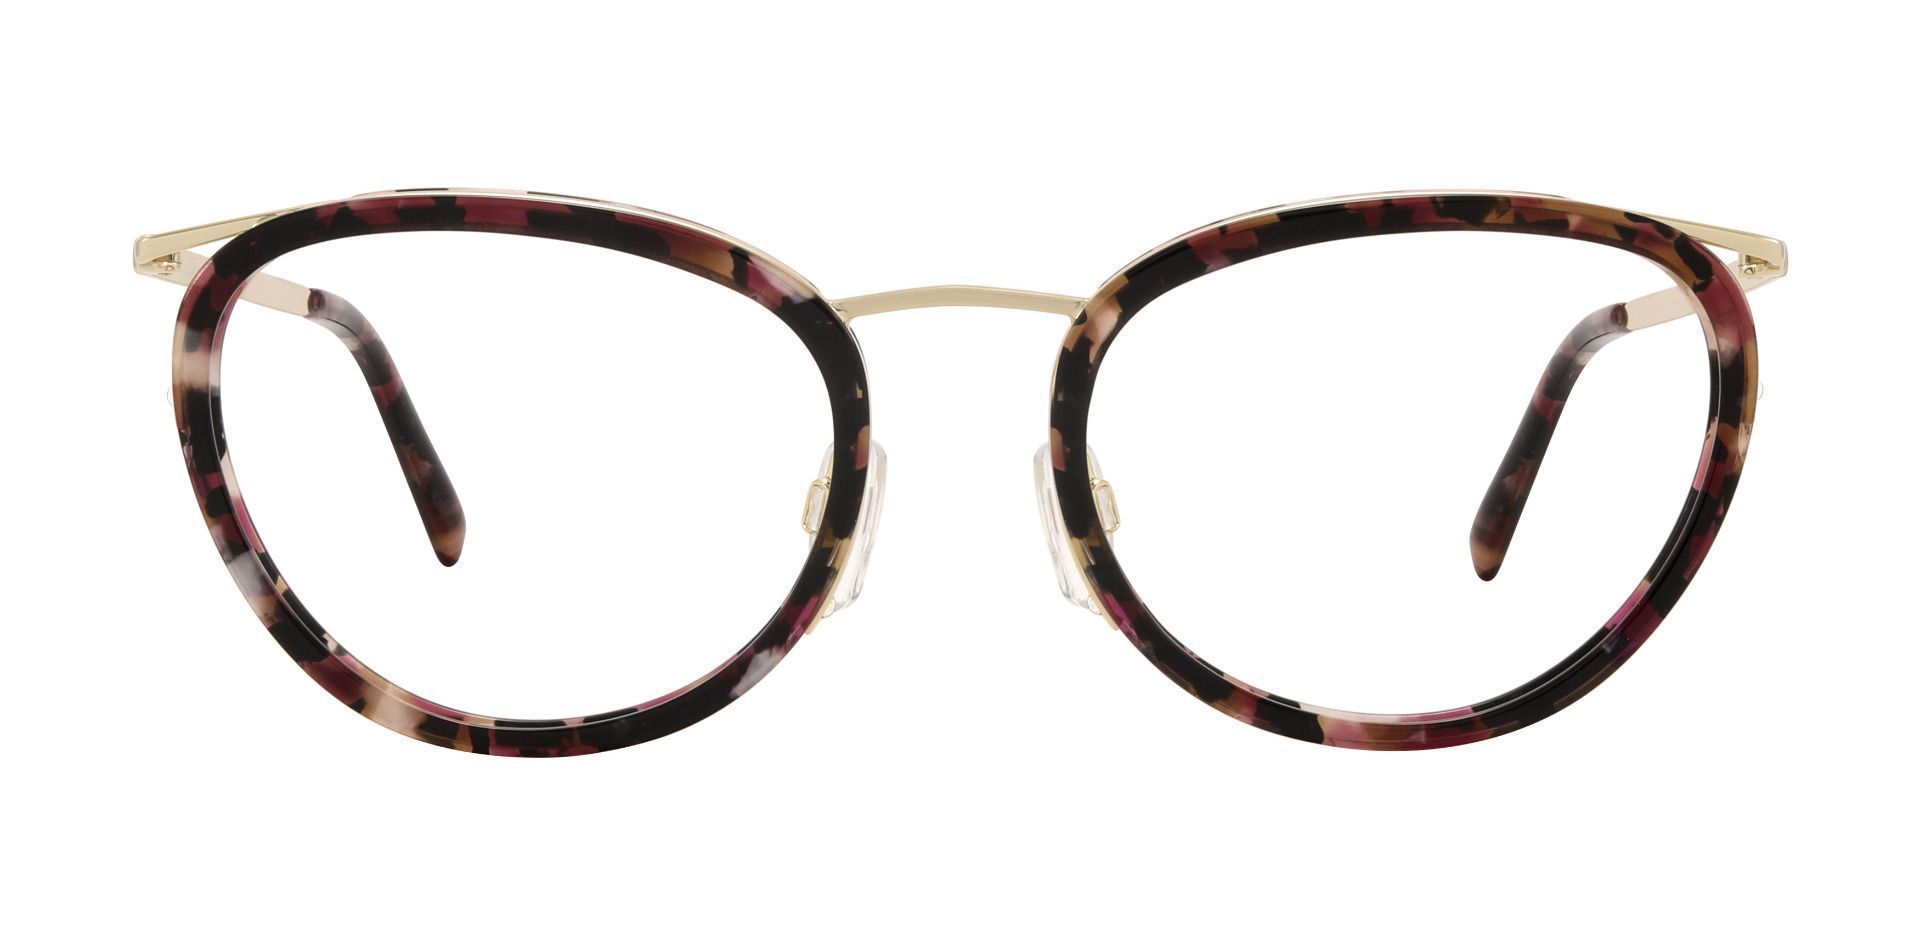 Molina Oval Prescription Glasses - Two